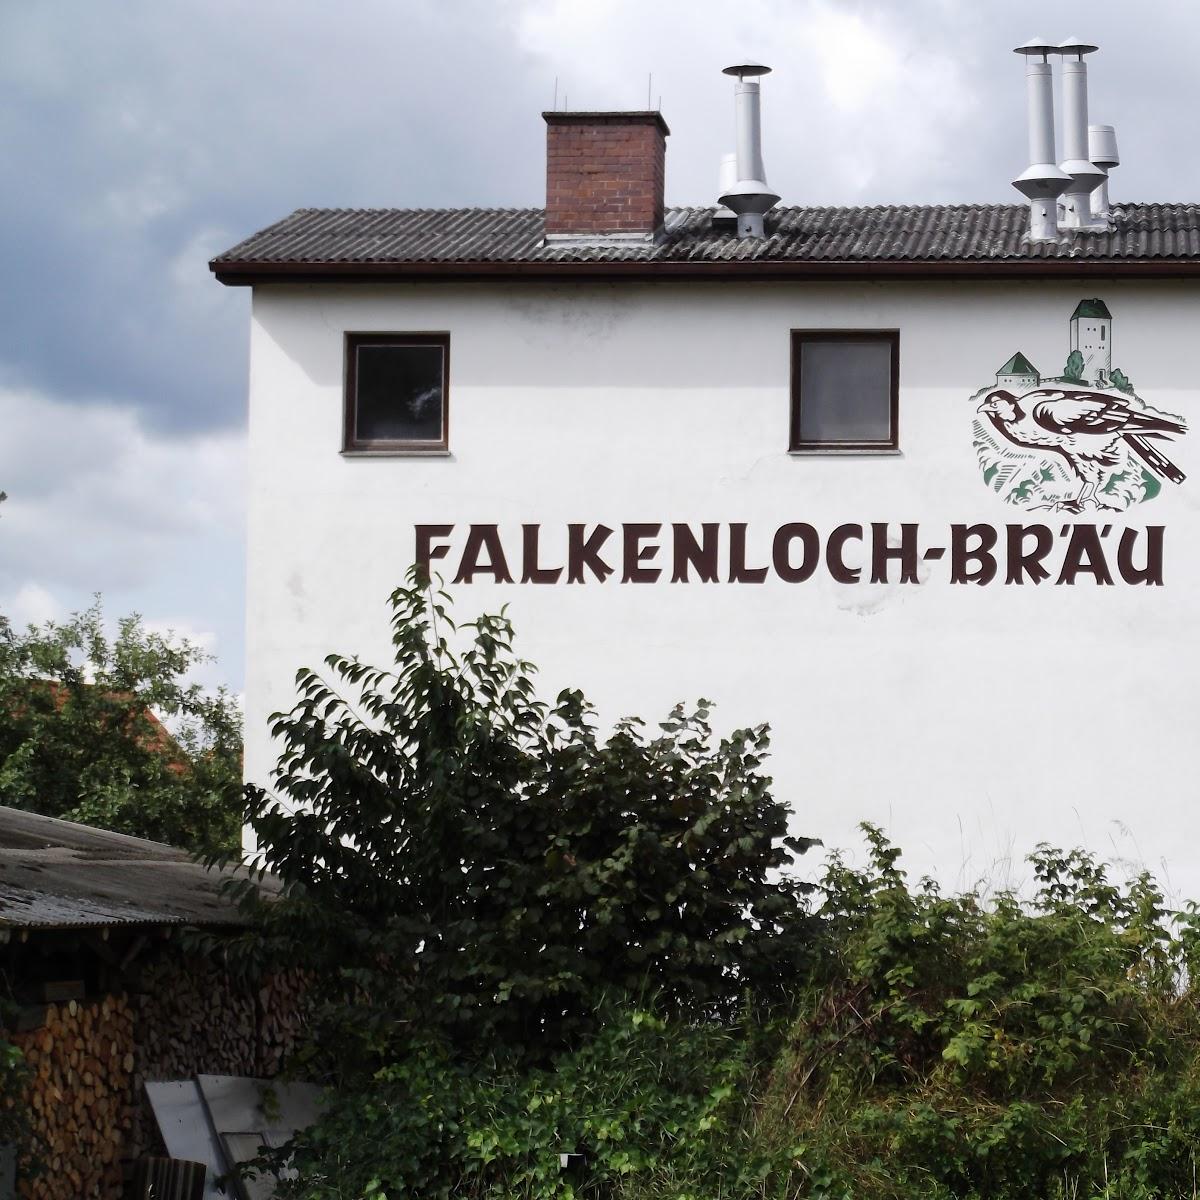 Restaurant "Brauerei Falkenloch" in Neuhaus an der Pegnitz